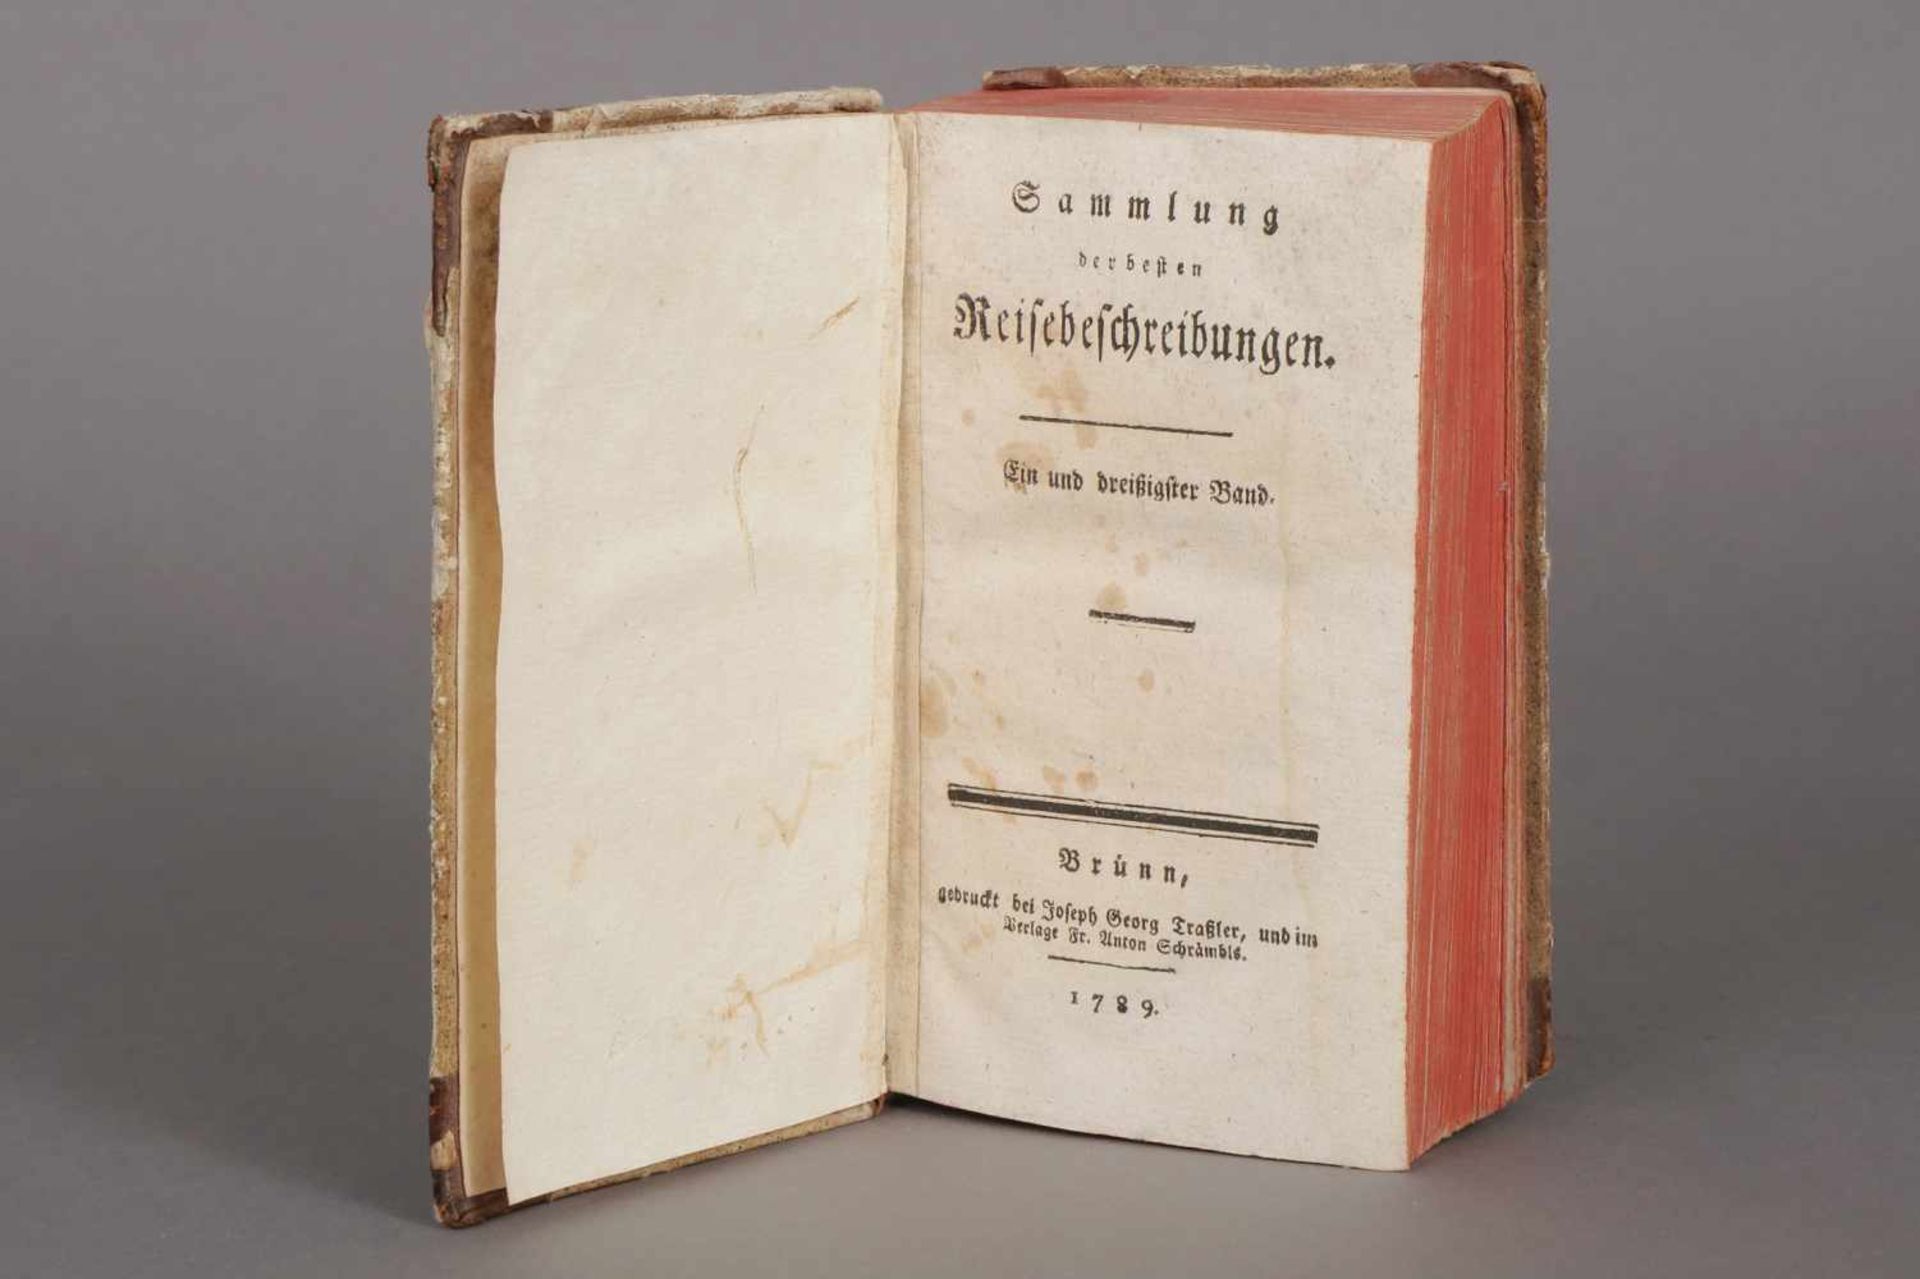 Buch ¨Sammlung der besten Reisebeschreibungen¨ Brünn, 1789, gedruckt bei Joseph Traßler,